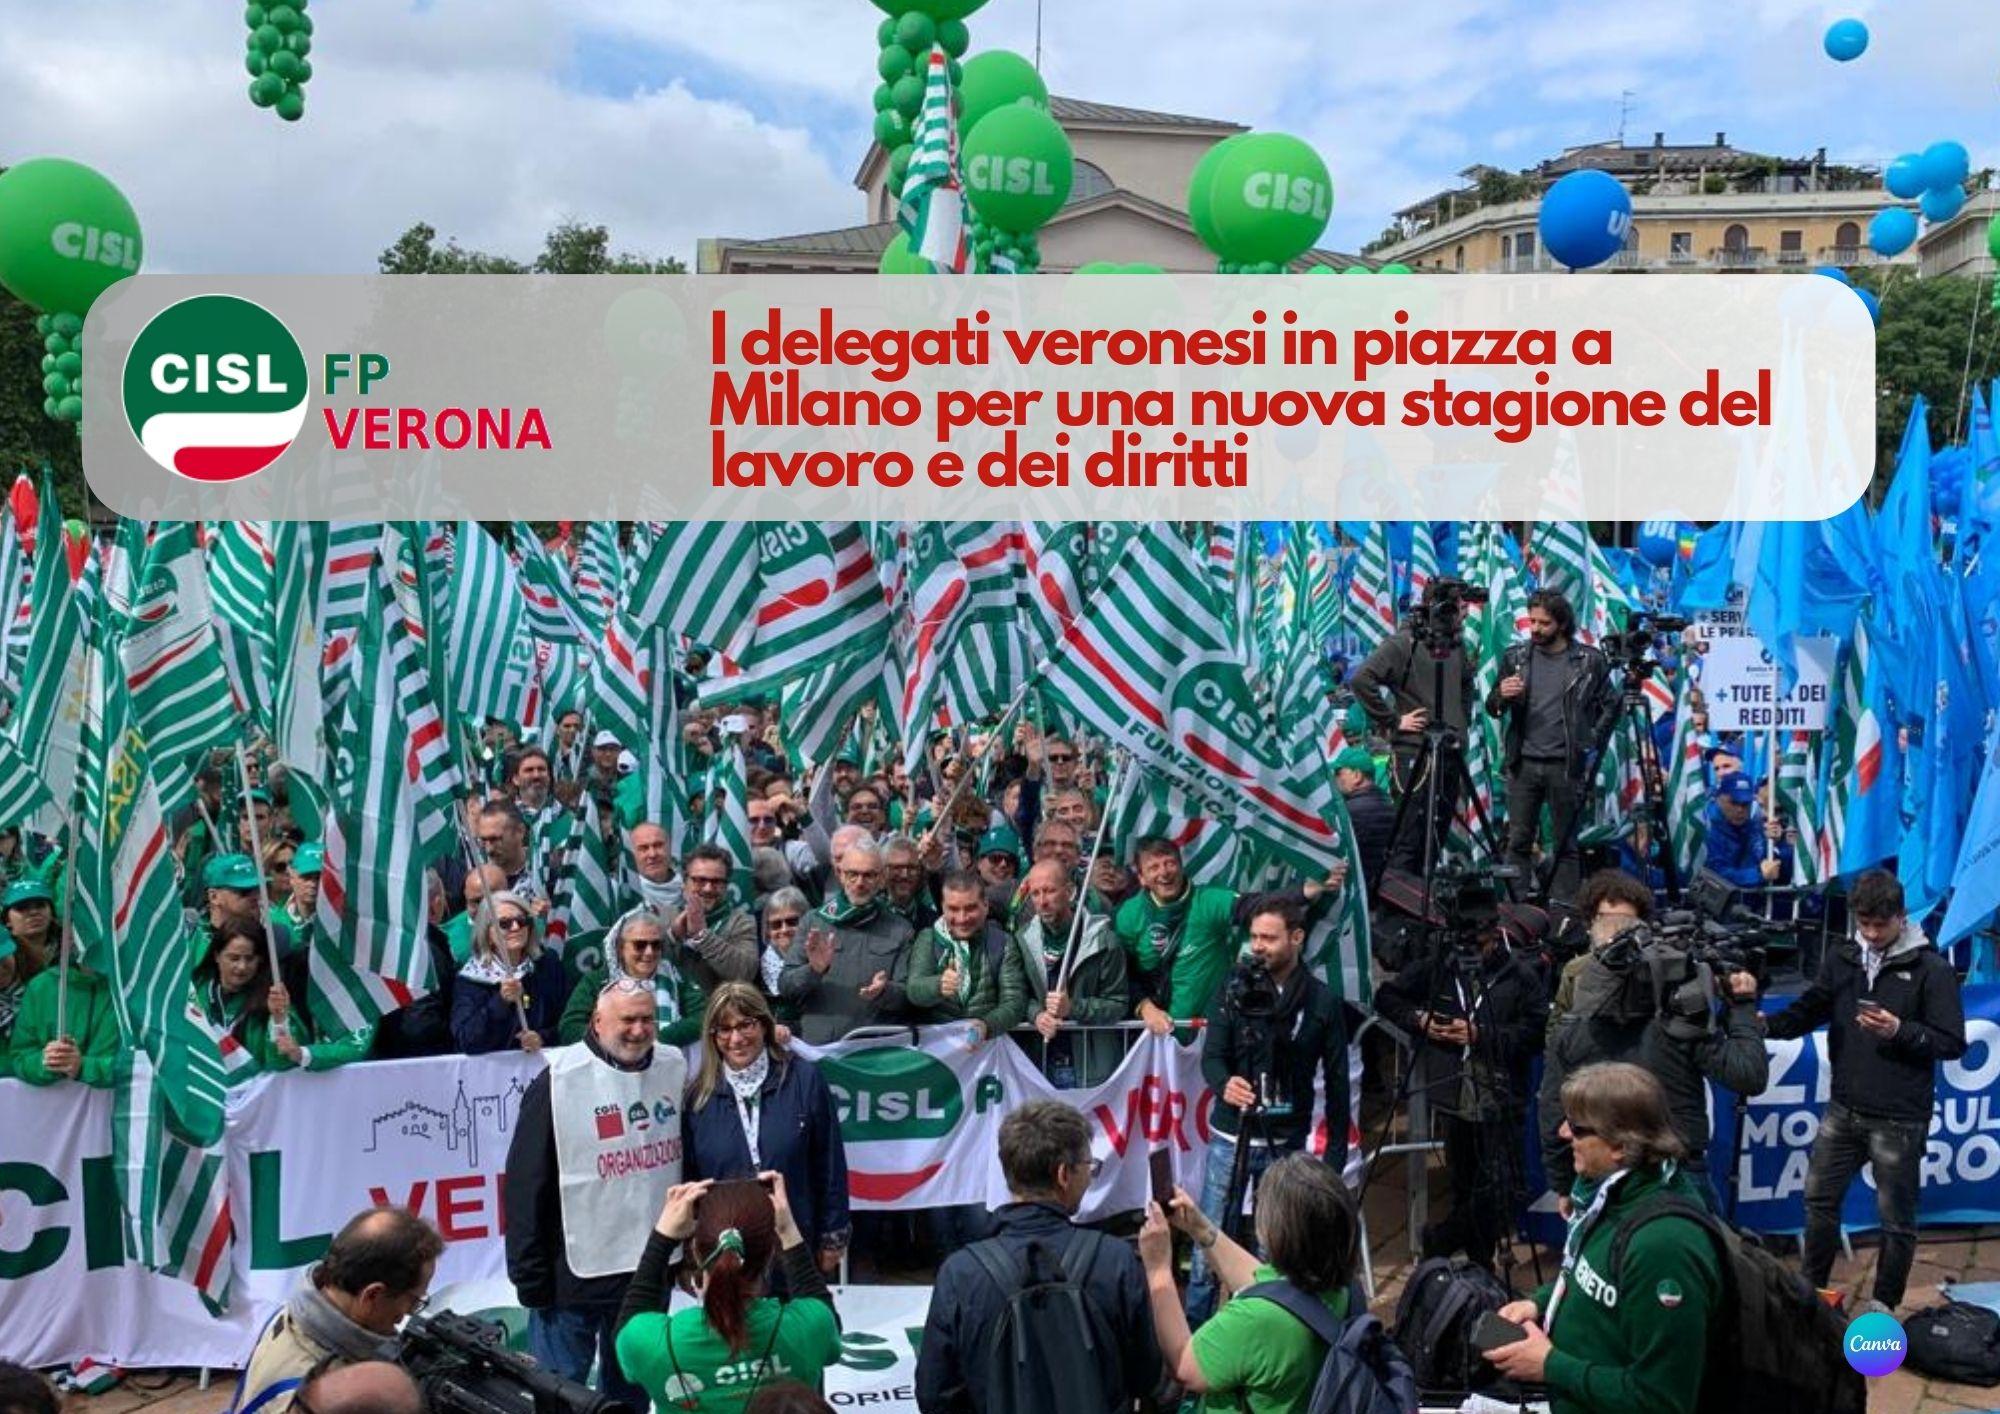 CISL FP Verona. I delegati veronesi in piazza a Milano per una nuova stagione del lavoro e dei diritti